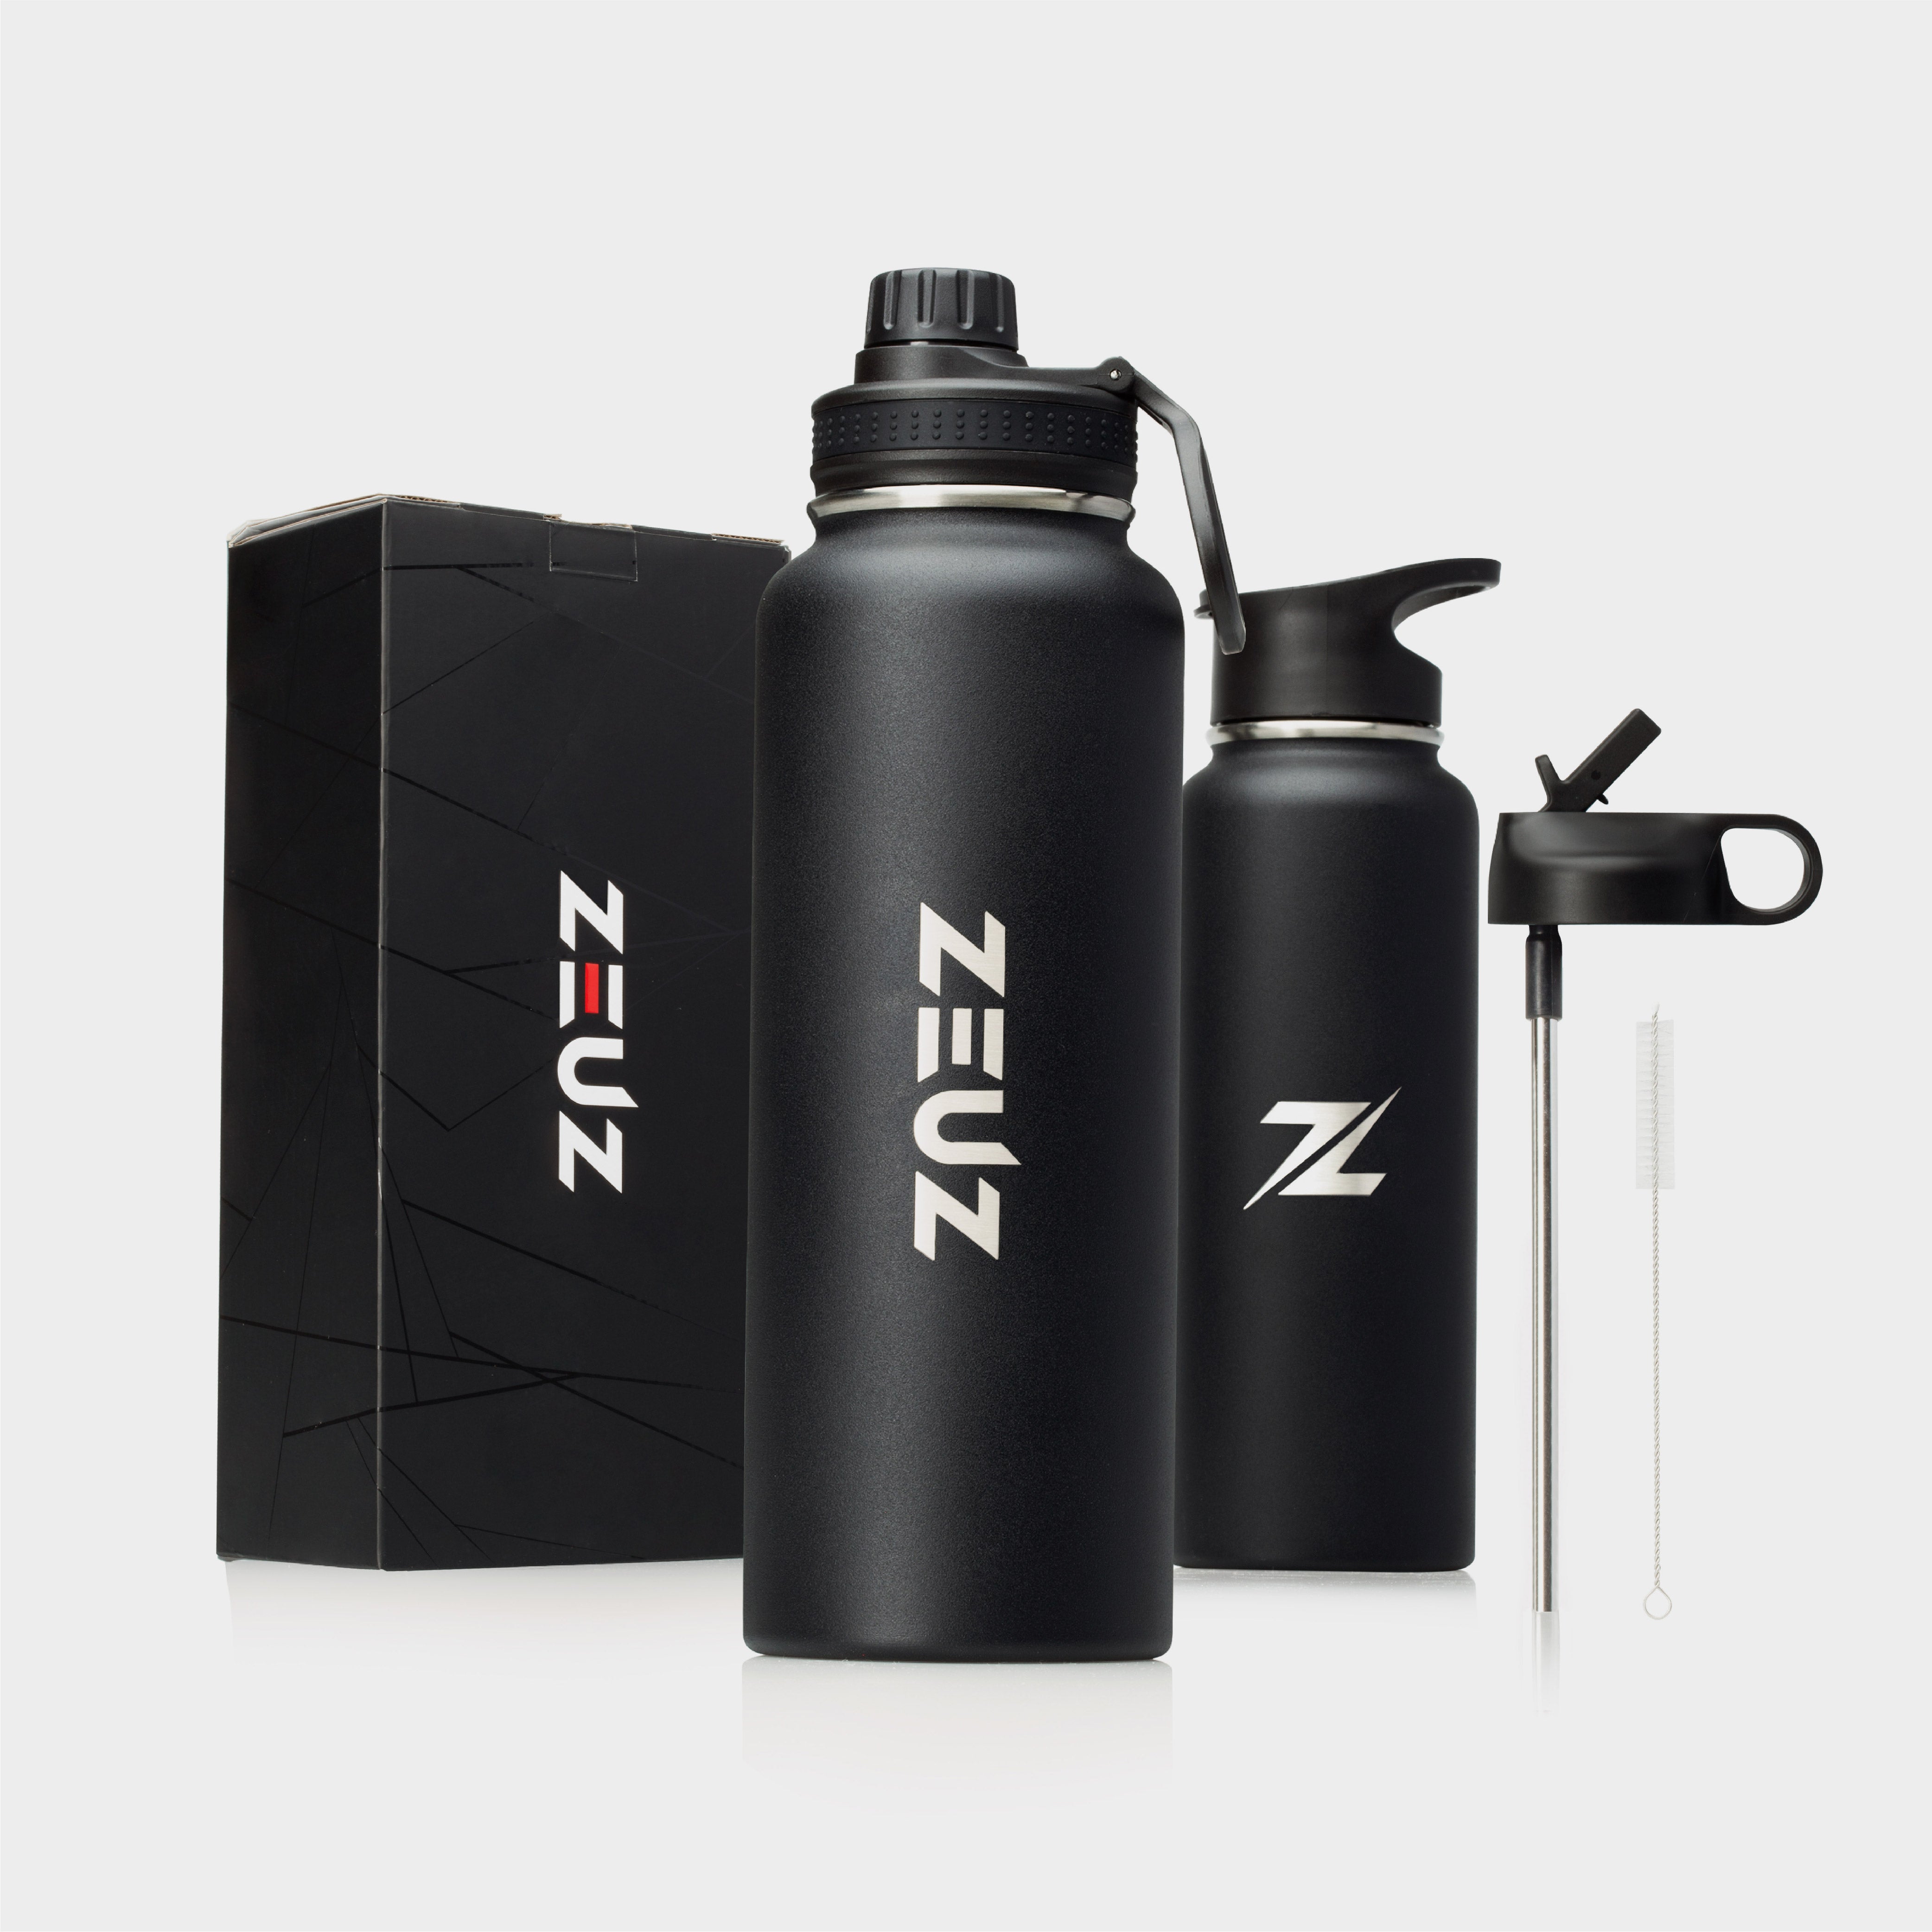 ZEUZ Premium Stainless Steel Thermos Bottle & Drinking Bottle - 1.2 Liters